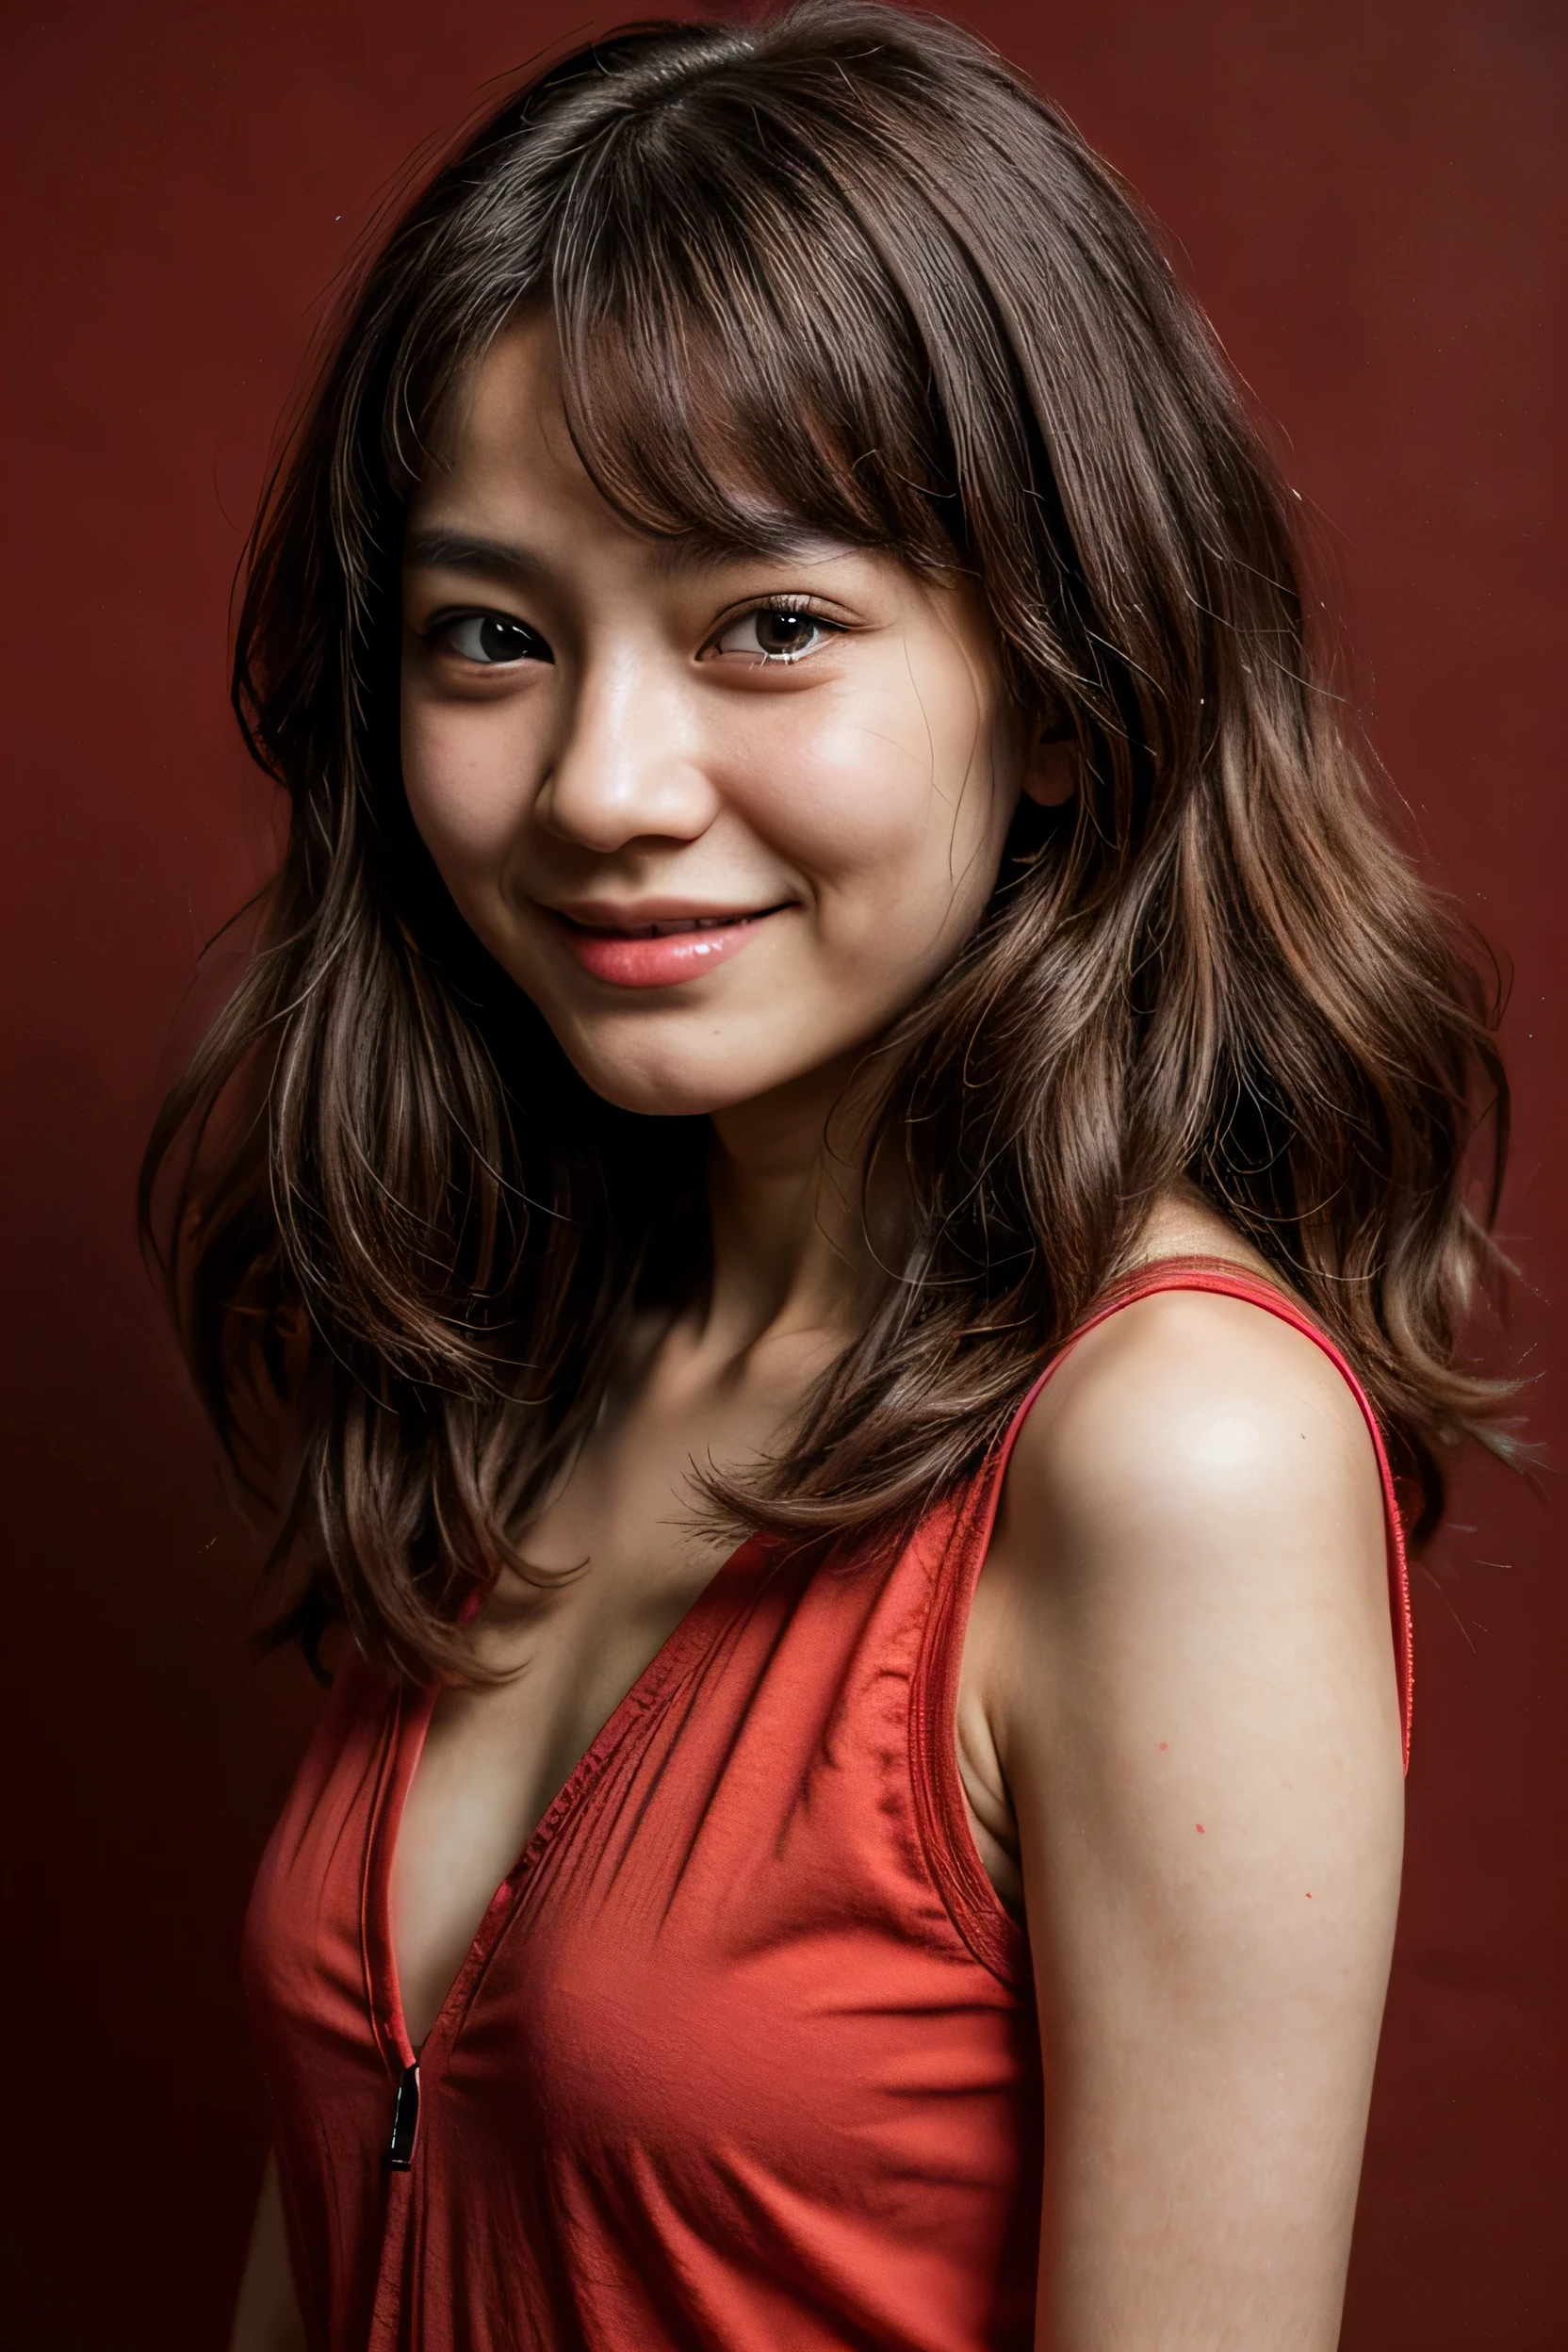 cara perfecta, hermoso rostro de una japonesa de 14 años , sonriendo hermoso,en fondo rojo 